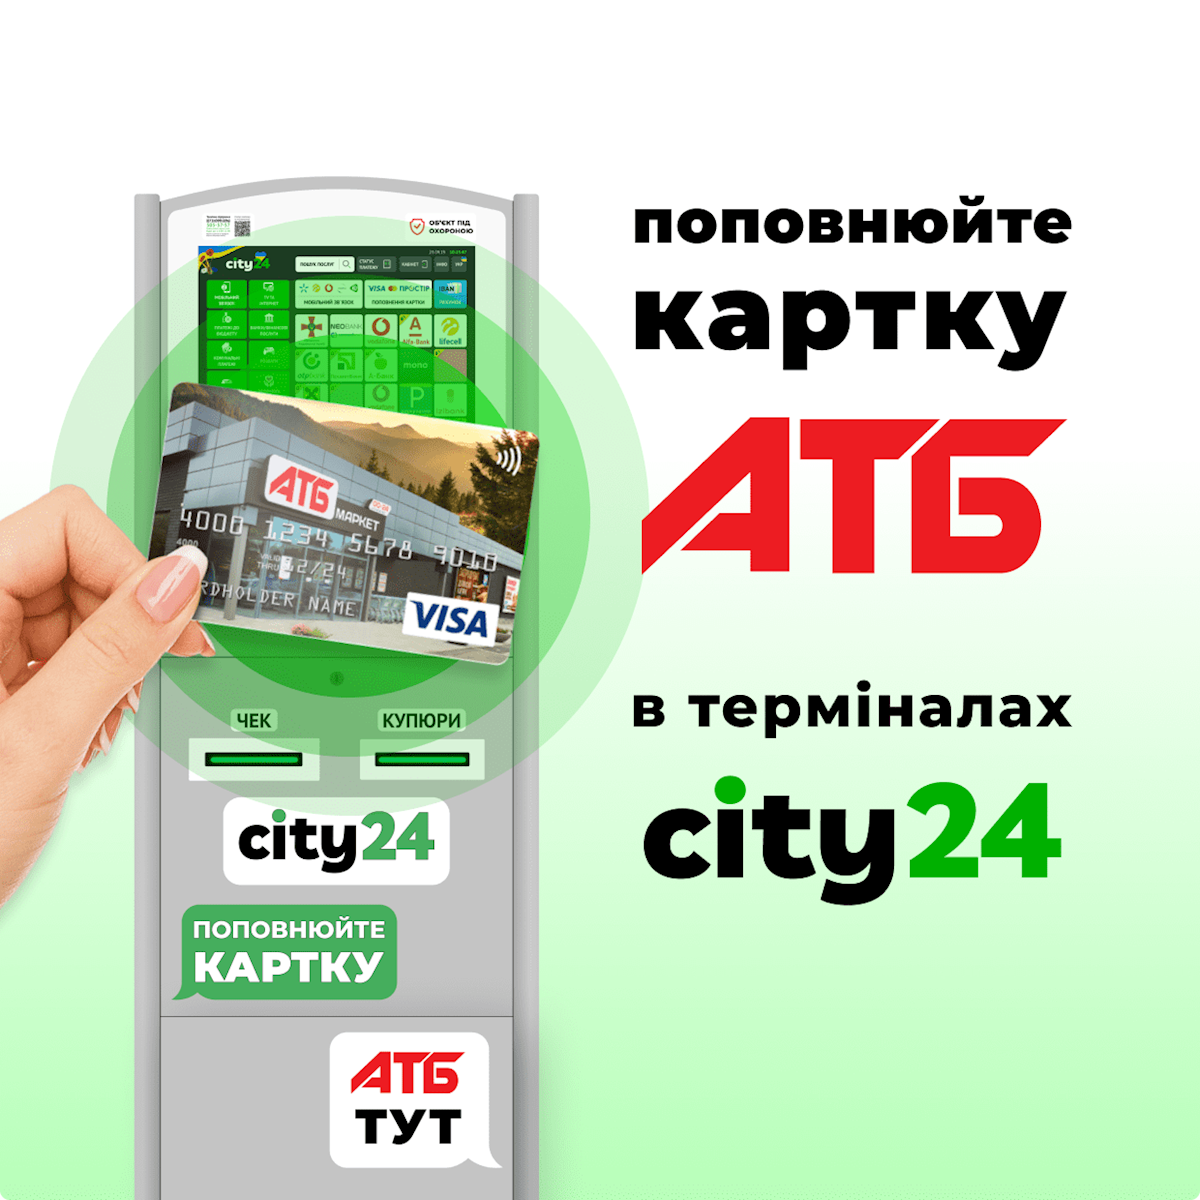 Поповнення картки АТБ в терміналах та на сайті city24 